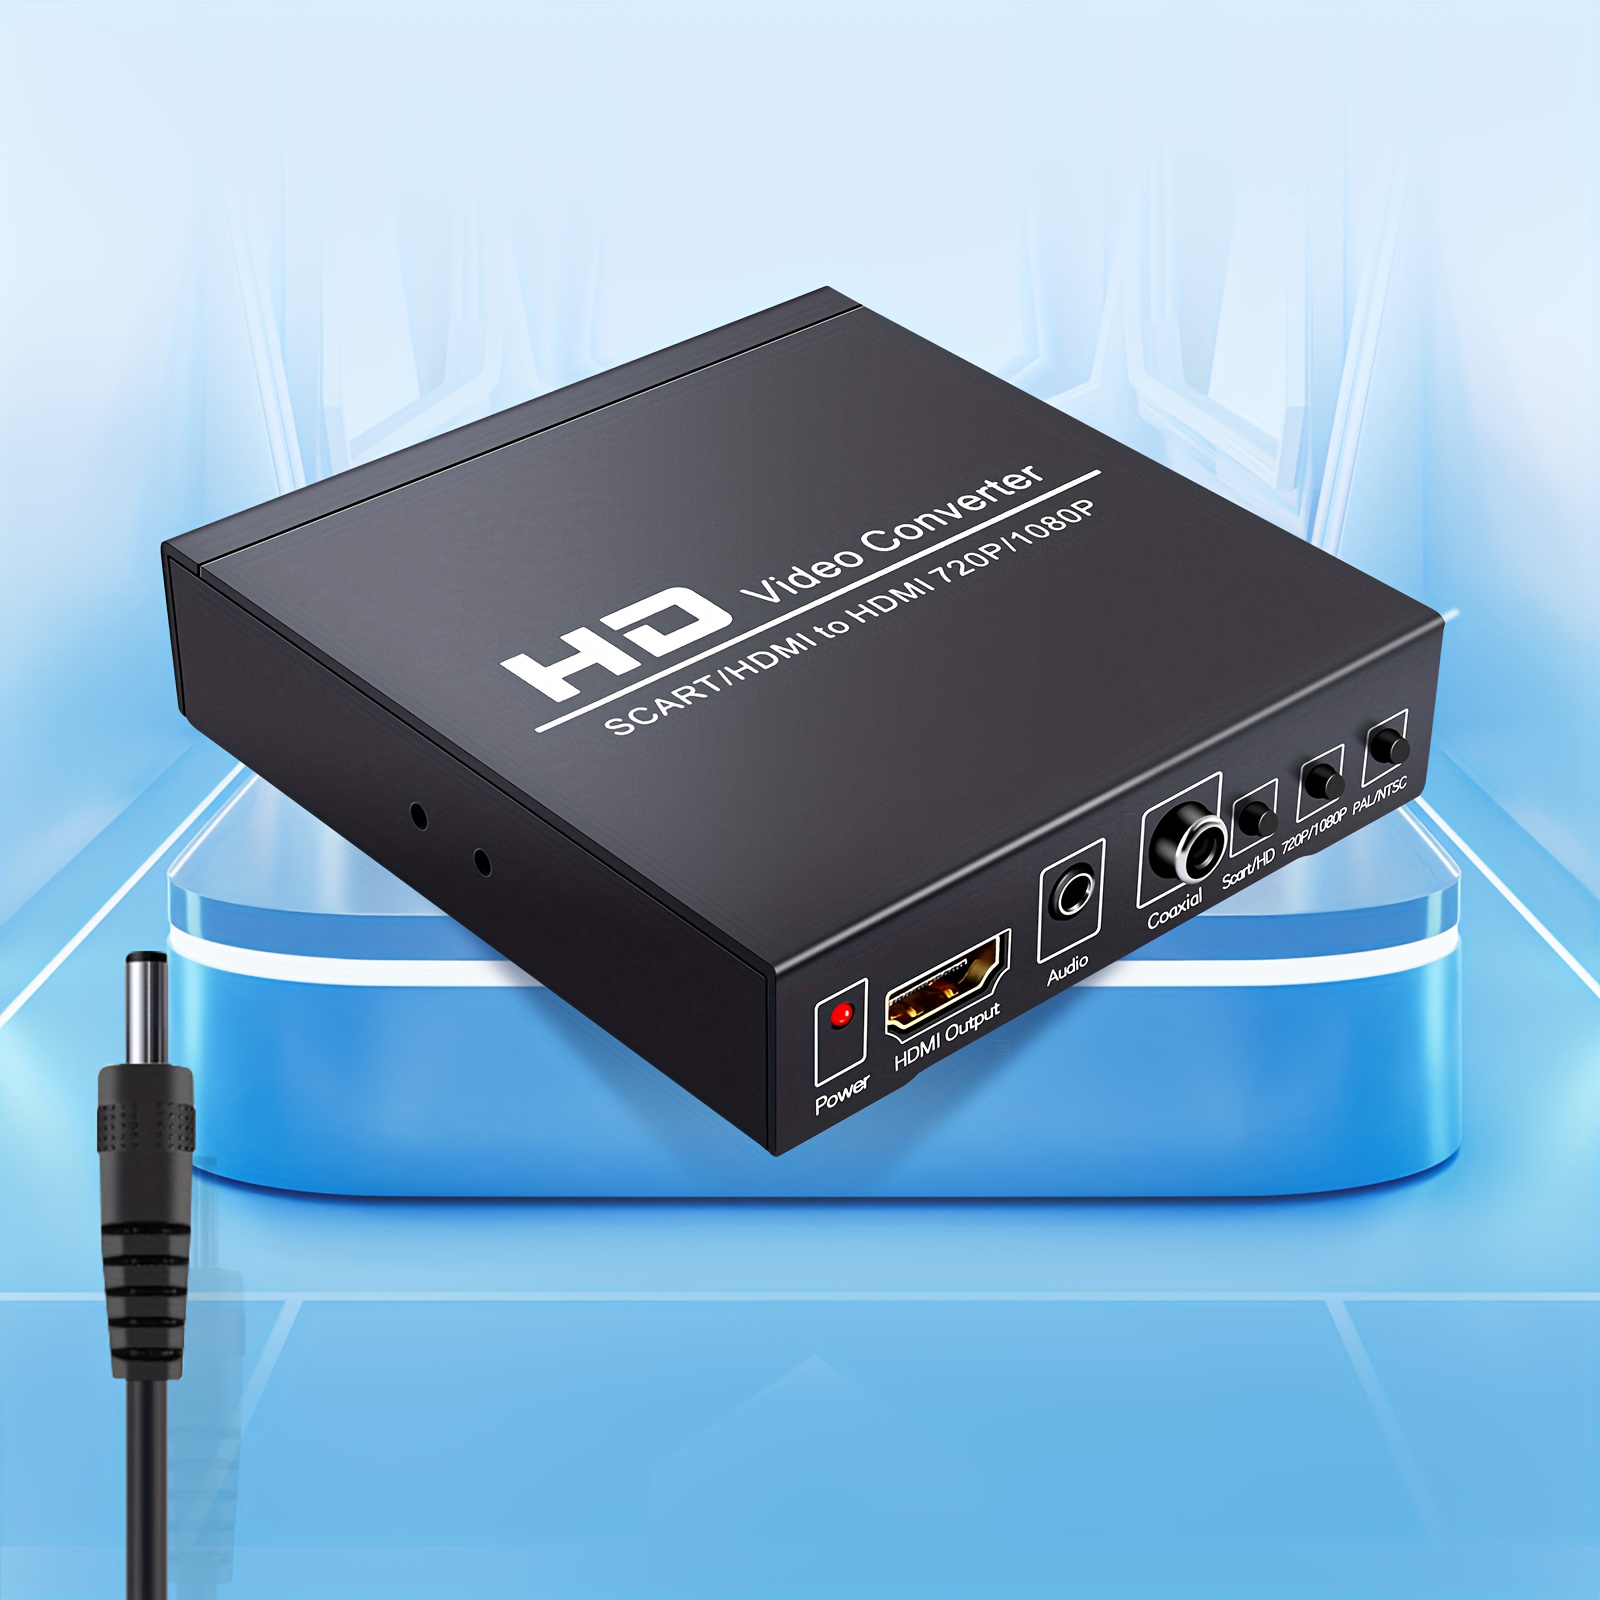 Câble convertisseur vidéo - HDMI -> Péritel - 720p/1080p@60Hz - 1